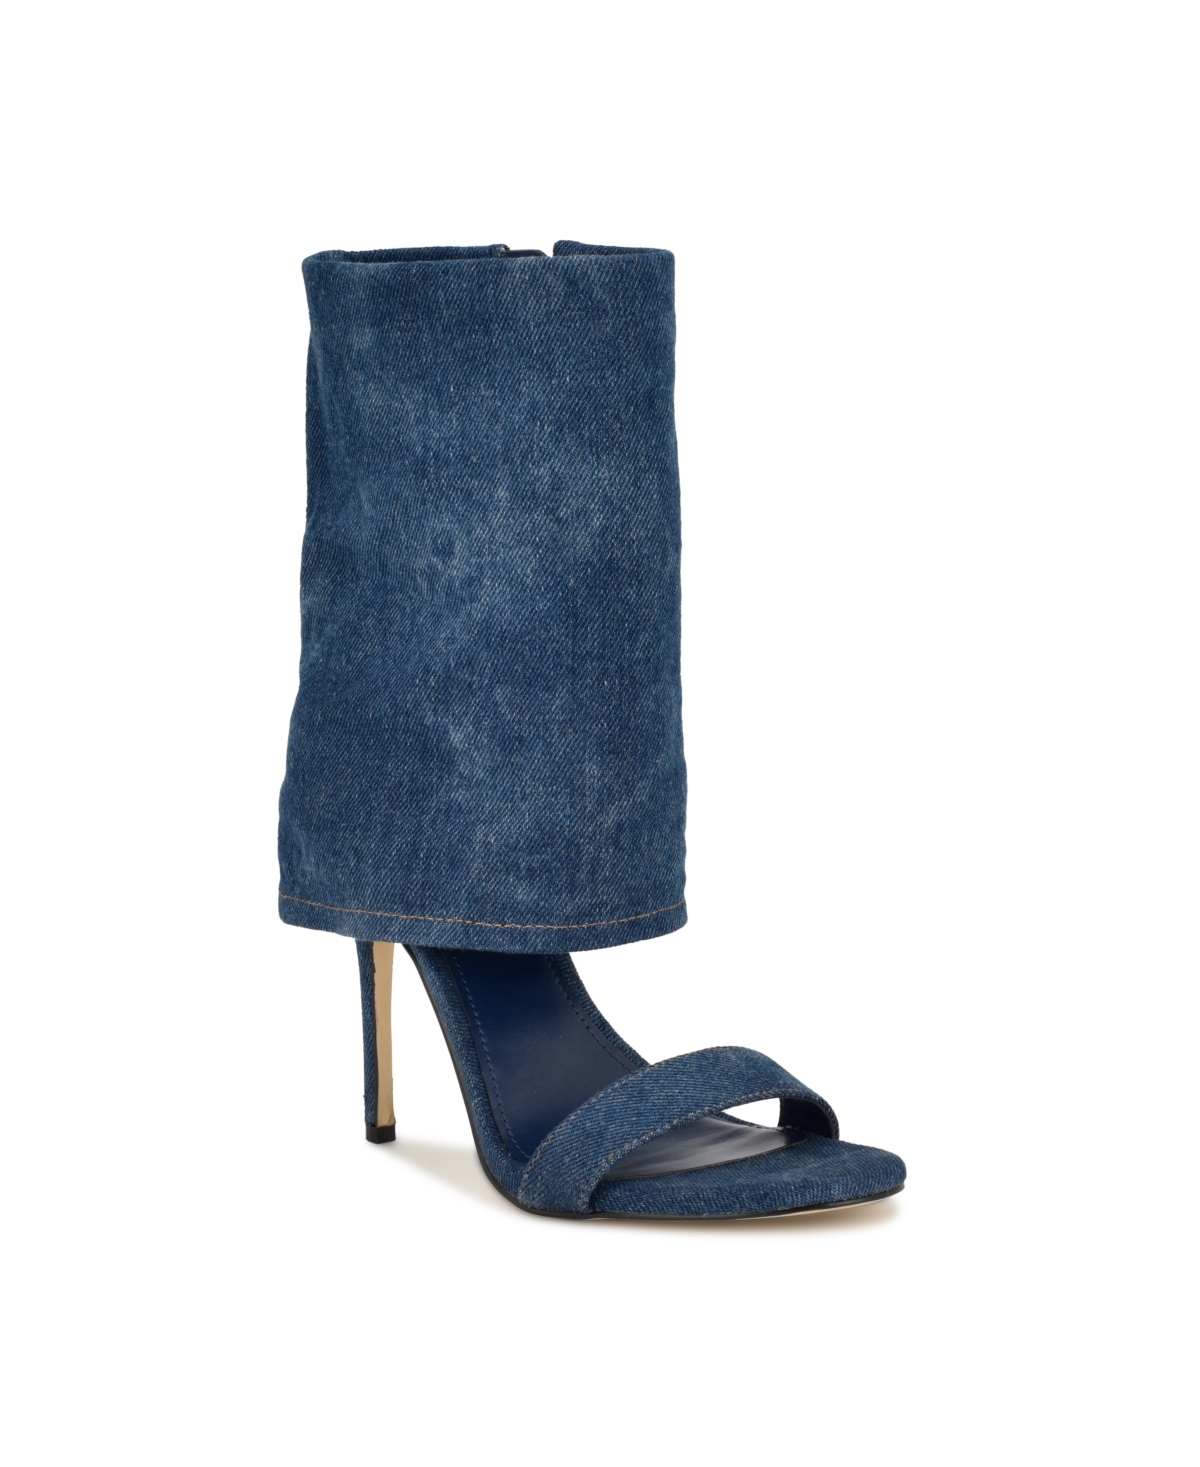 Women's Macken Stiletto Almond Toe Dress Sandals - Dark Blue Denim- Textile